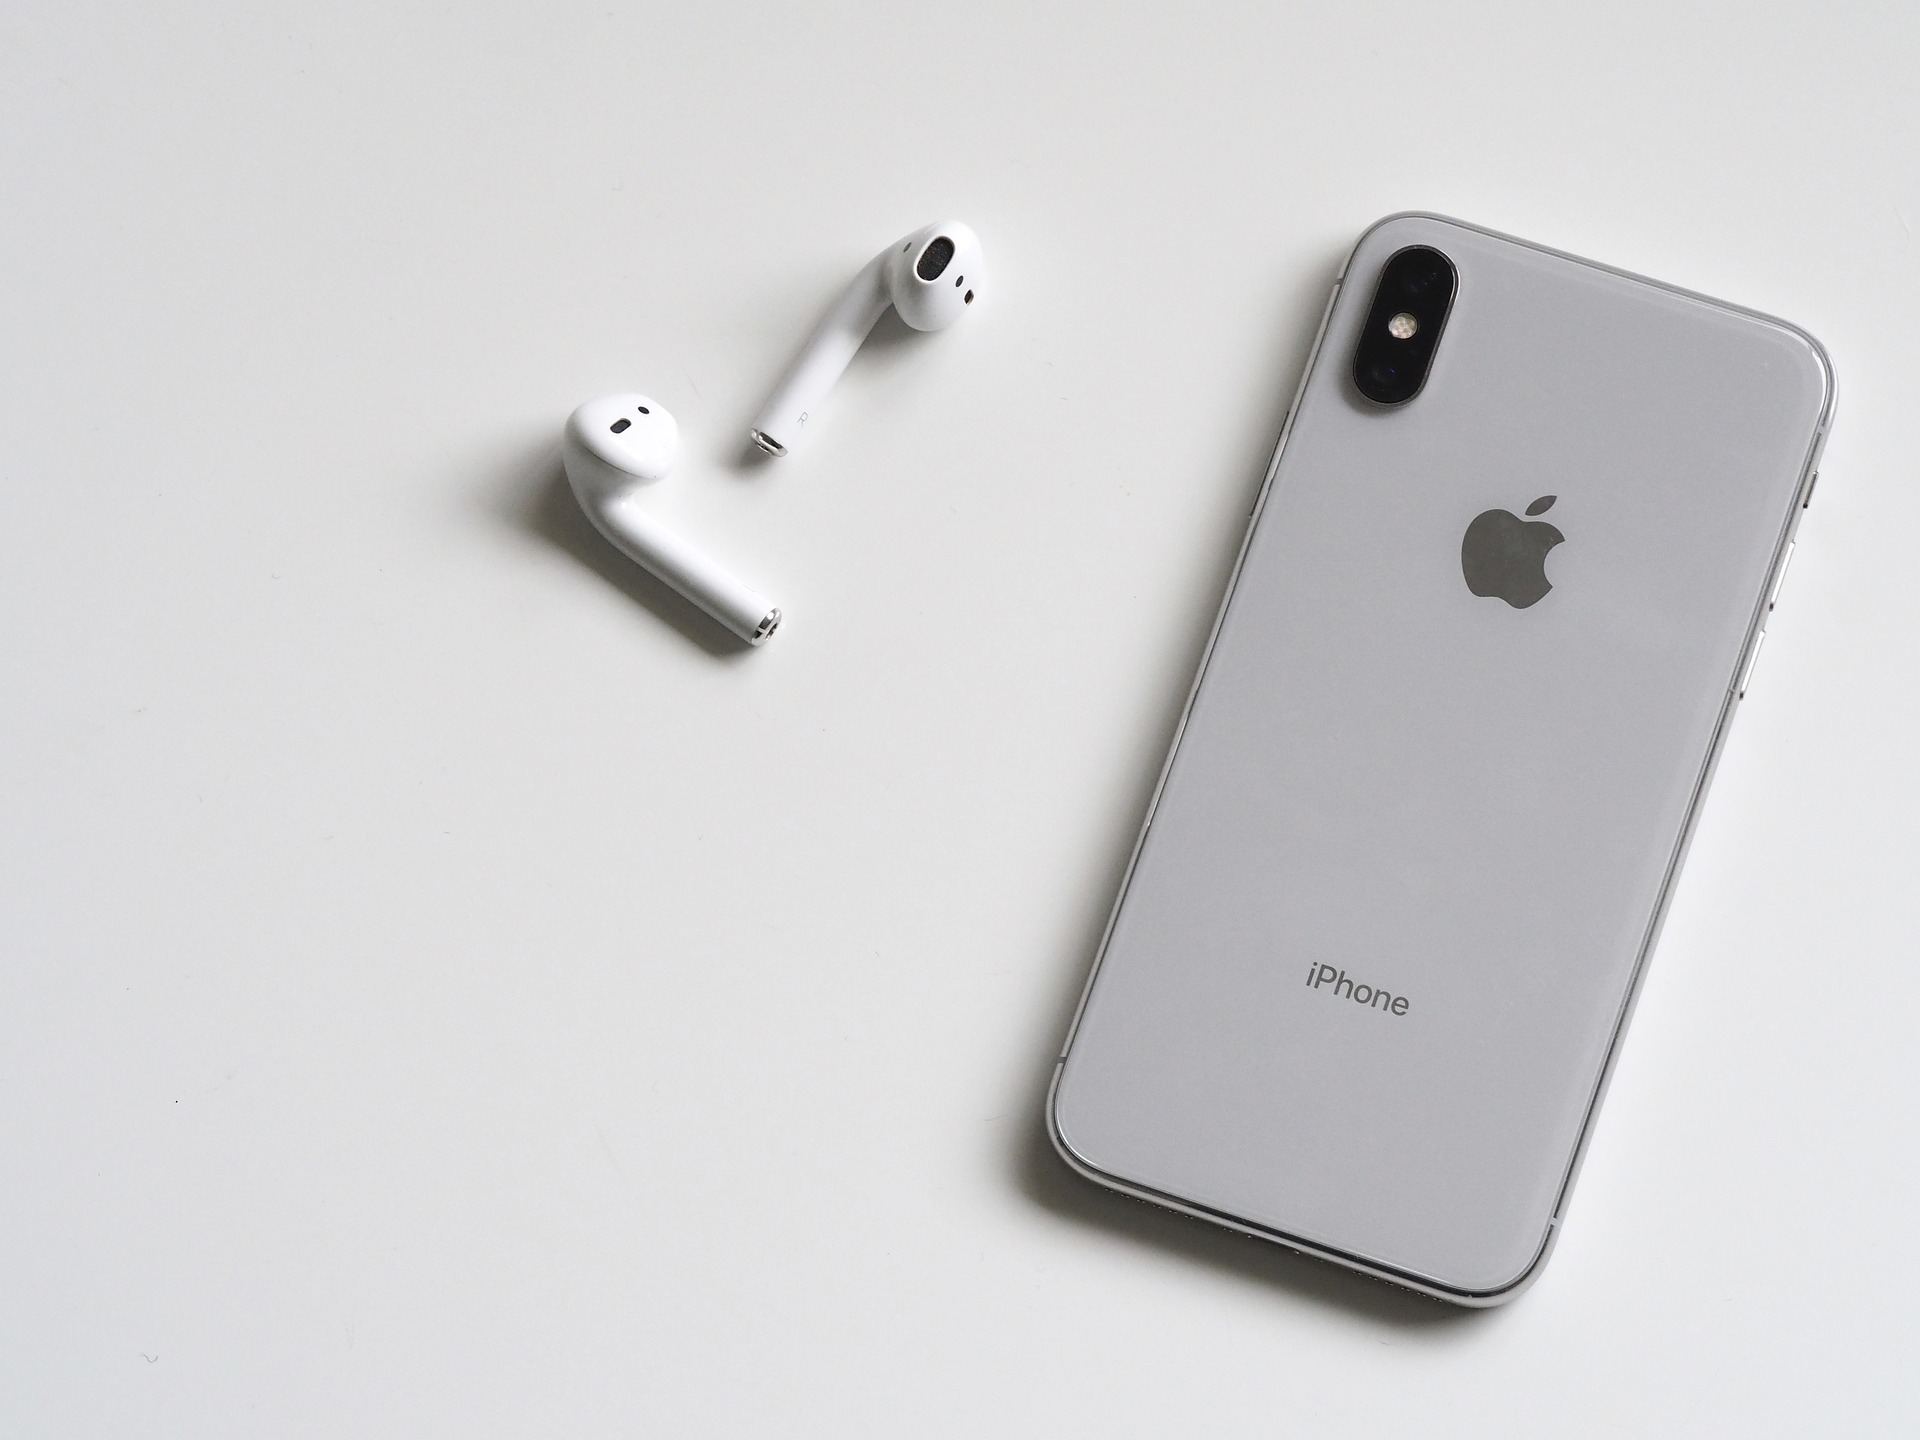  iPhone : les trois modèles de 2018 devrait avoir droit à Face ID